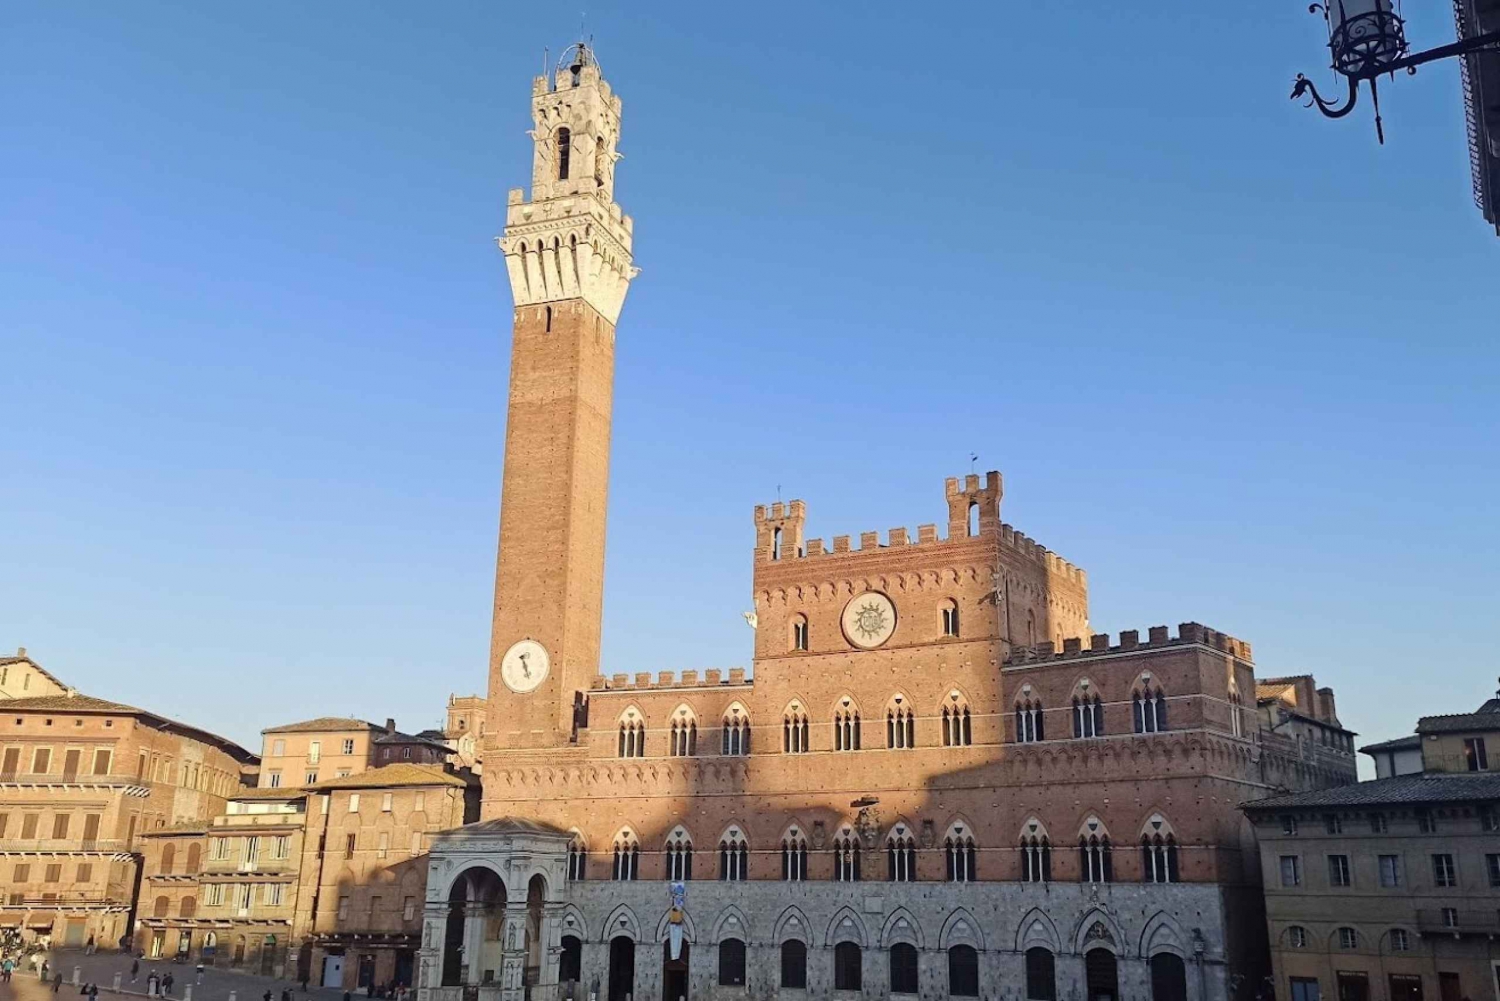 De Florença: visita a Pisa e Siena com degustação em Chianti